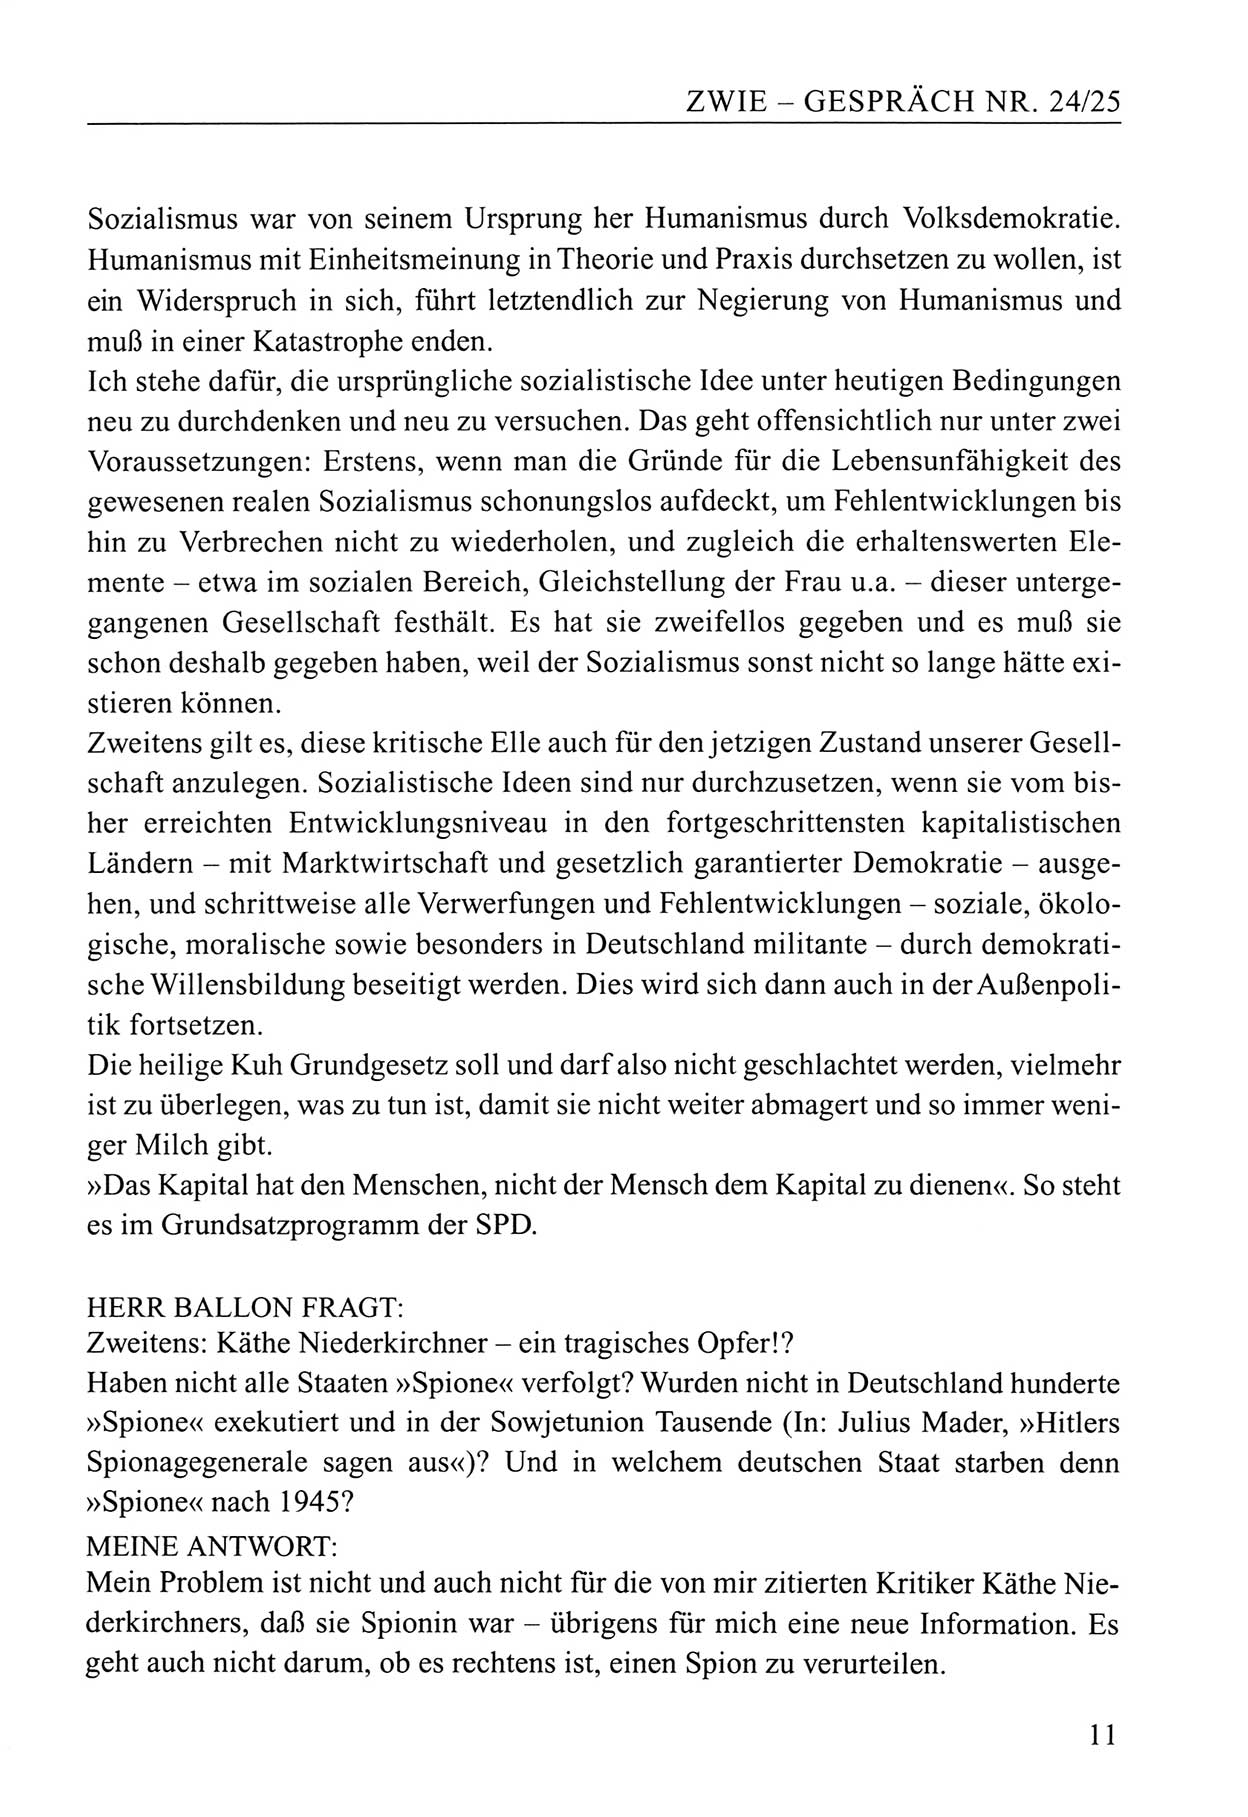 Zwie-Gespräch, Beiträge zum Umgang mit der Staatssicherheits-Vergangenheit [Deutsche Demokratische Republik (DDR)], Ausgabe Nr. 24/25, Berlin 1994, Seite 11 (Zwie-Gespr. Ausg. 24/25 1994, S. 11)